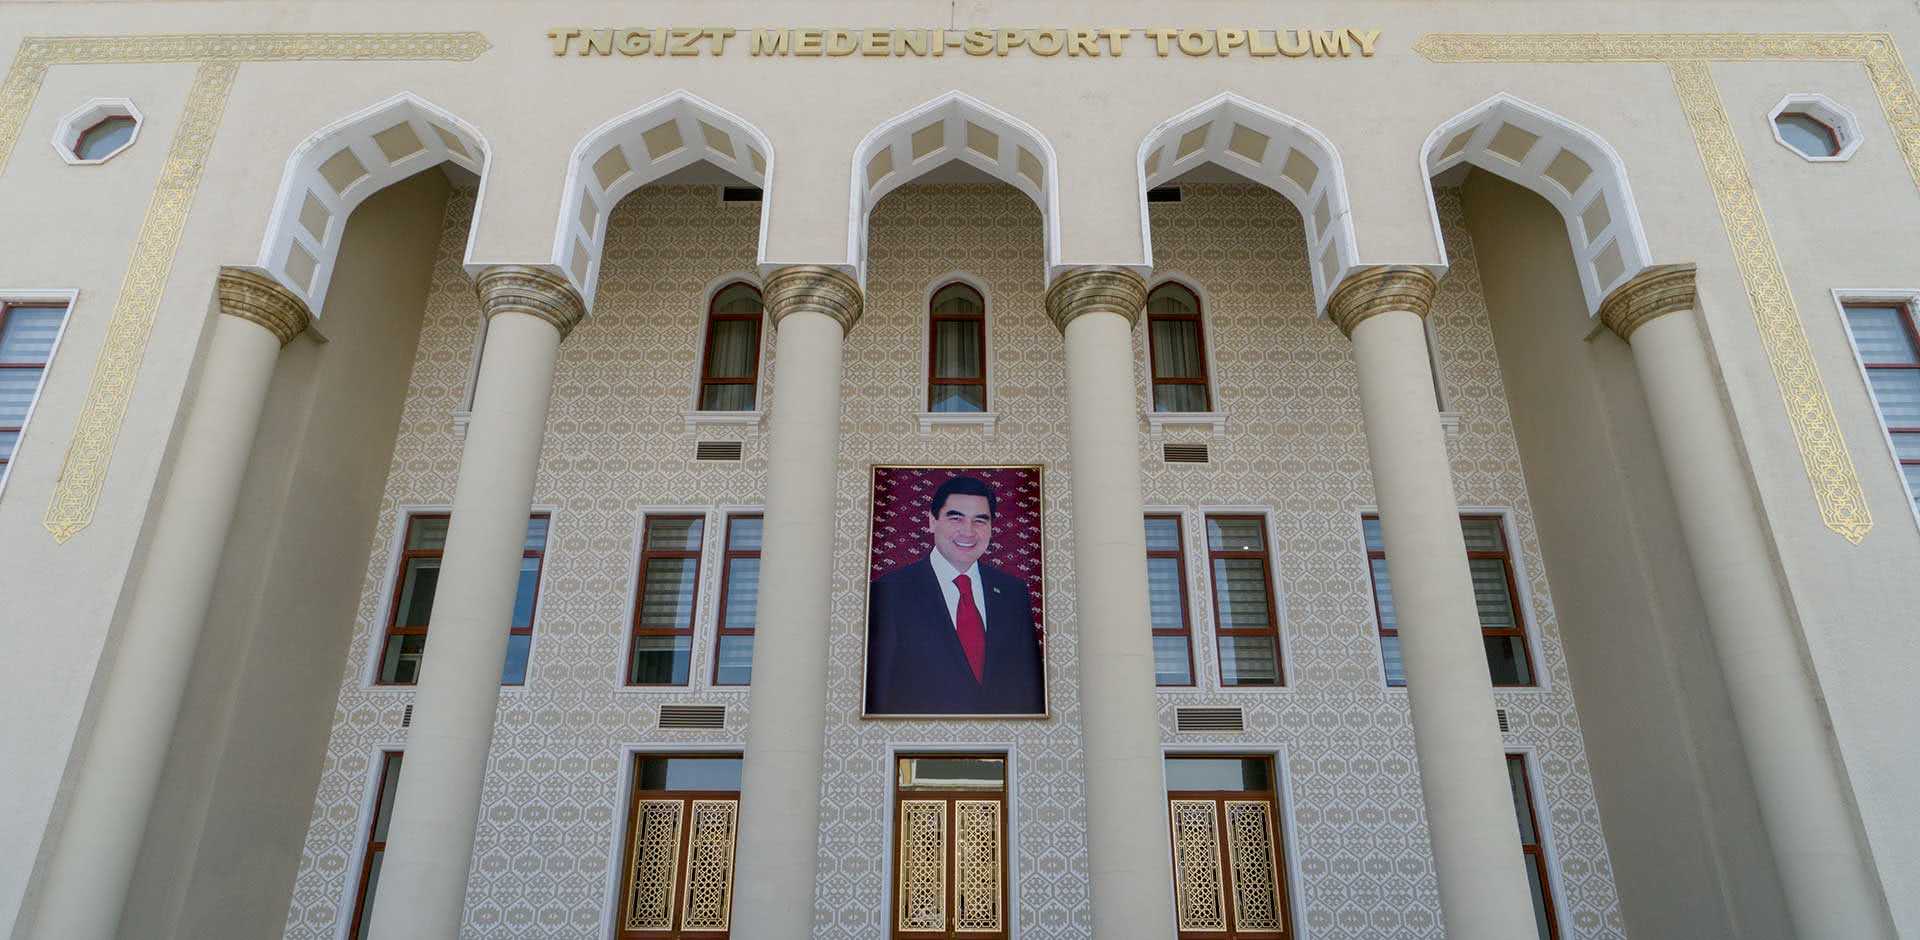 Turkmenbashi